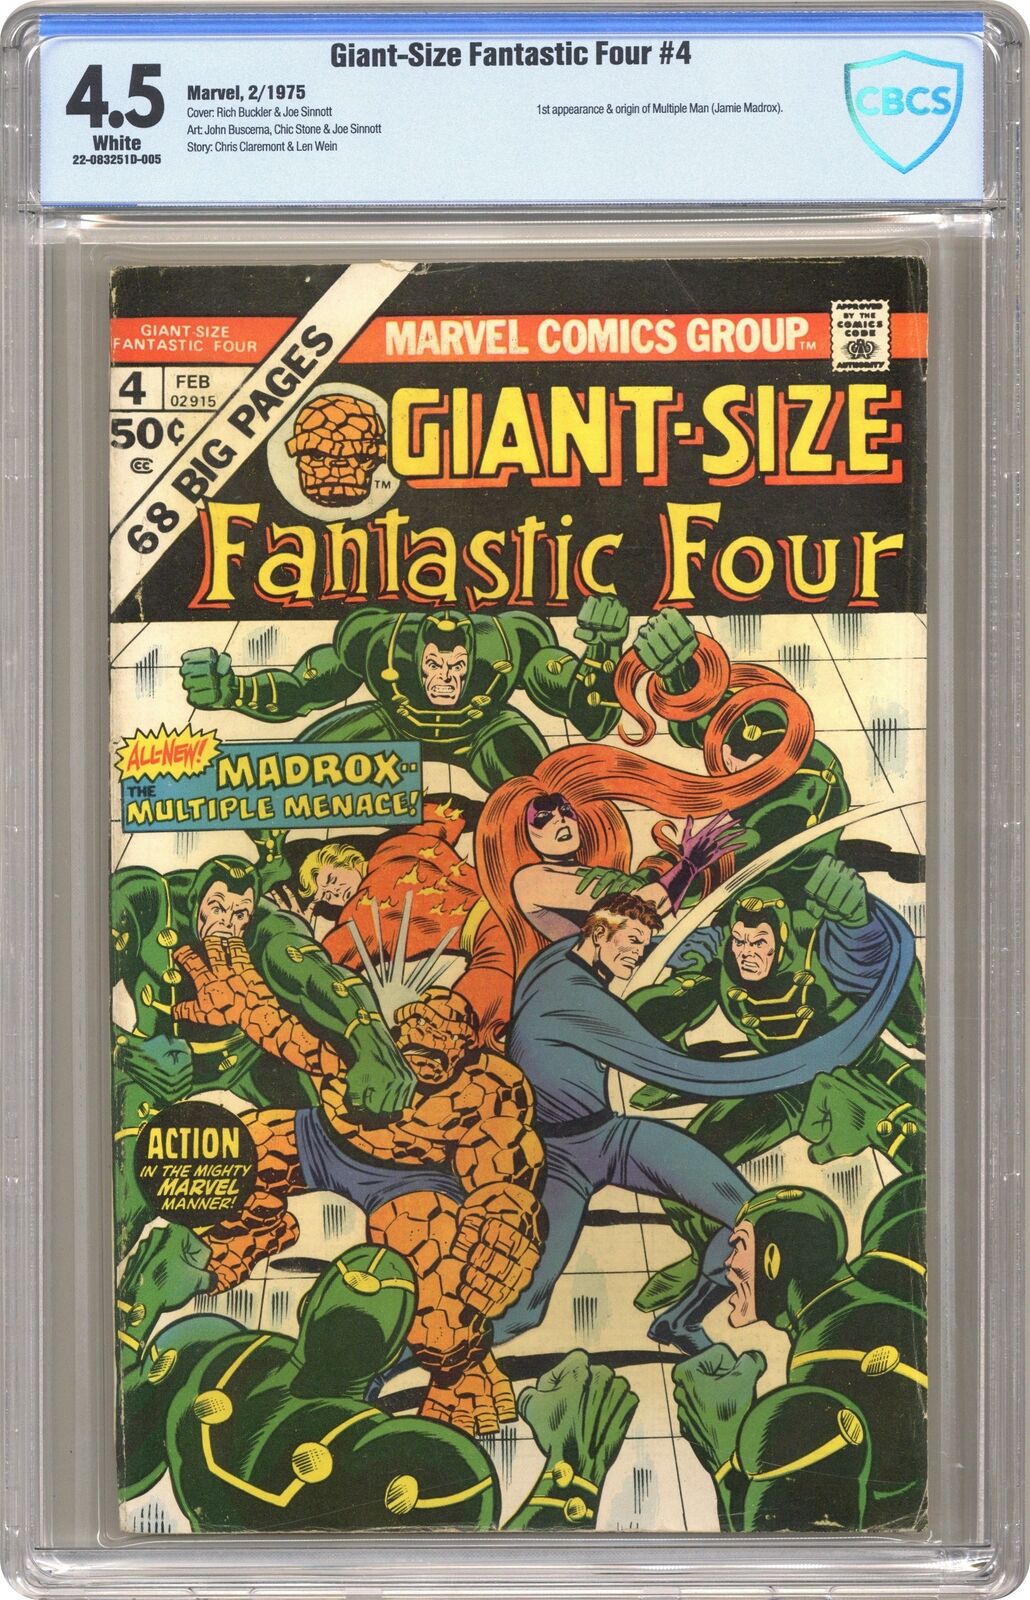 Giant Size Fantastic Four #4 CBCS 4.5 1975 22-083251D-005 1st app. Madrox